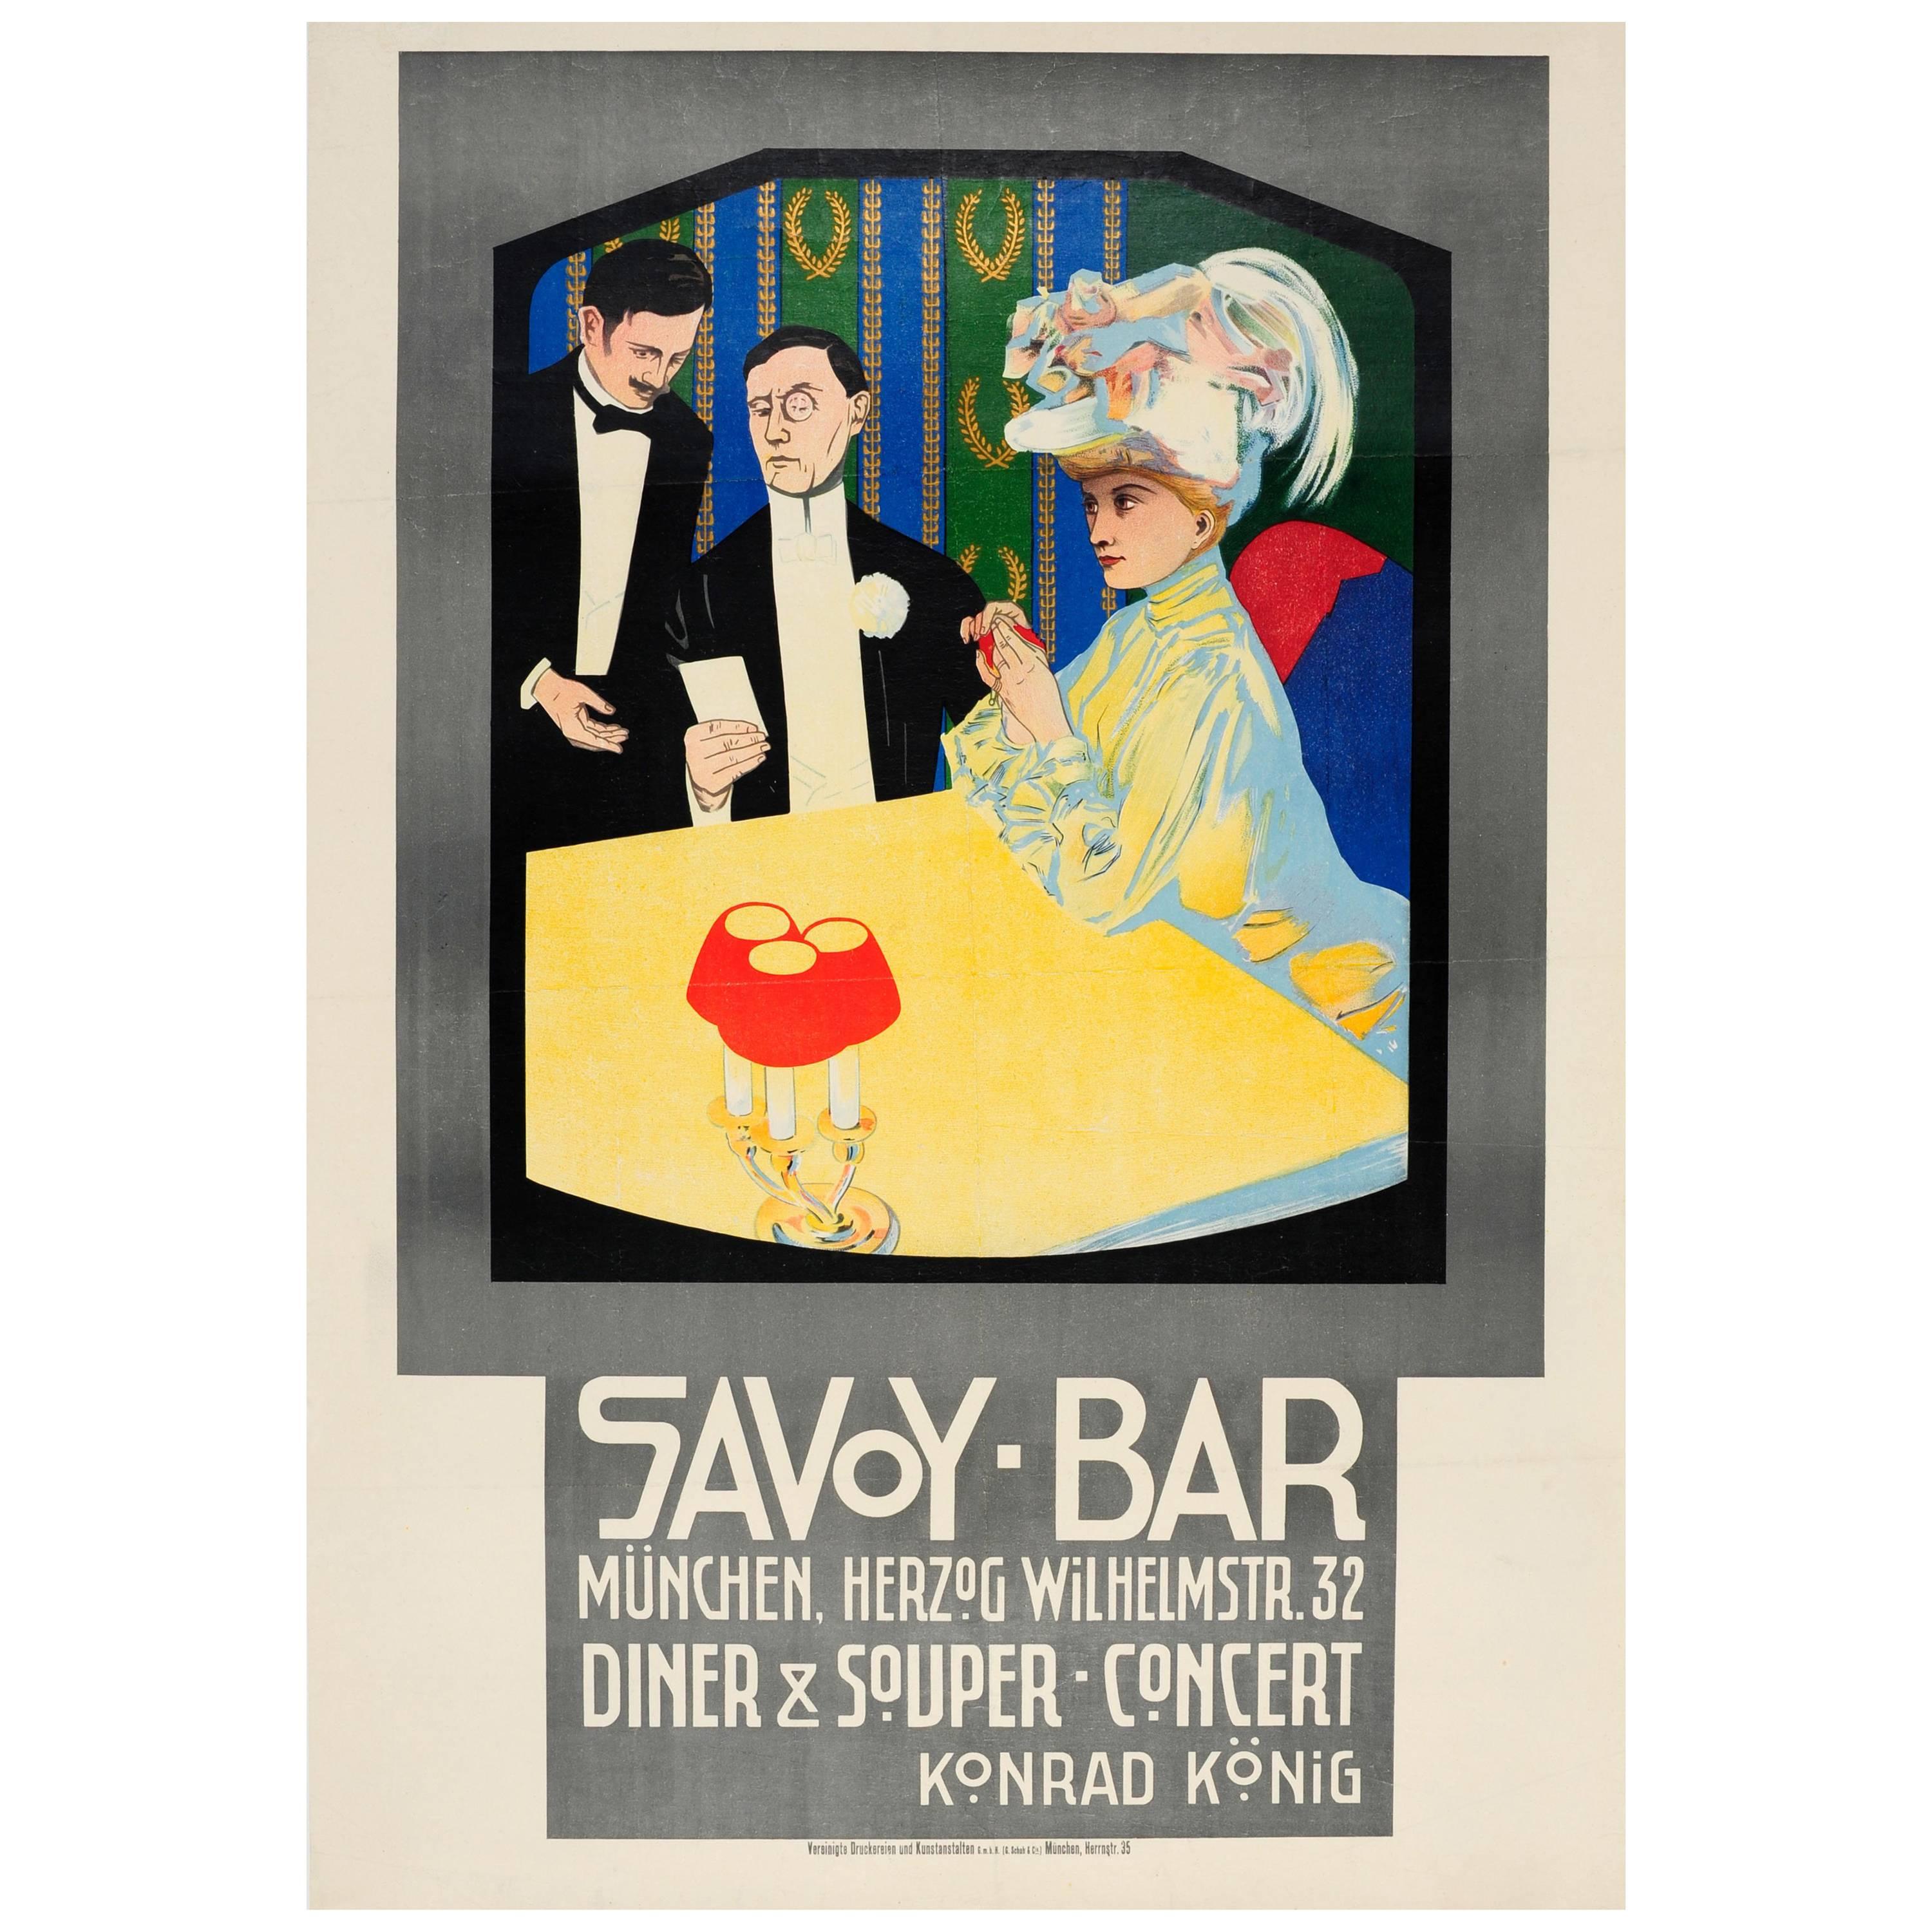 Antikes Plakat für ein Abendessen-Konzert in der Savoy Bar Munchen / München